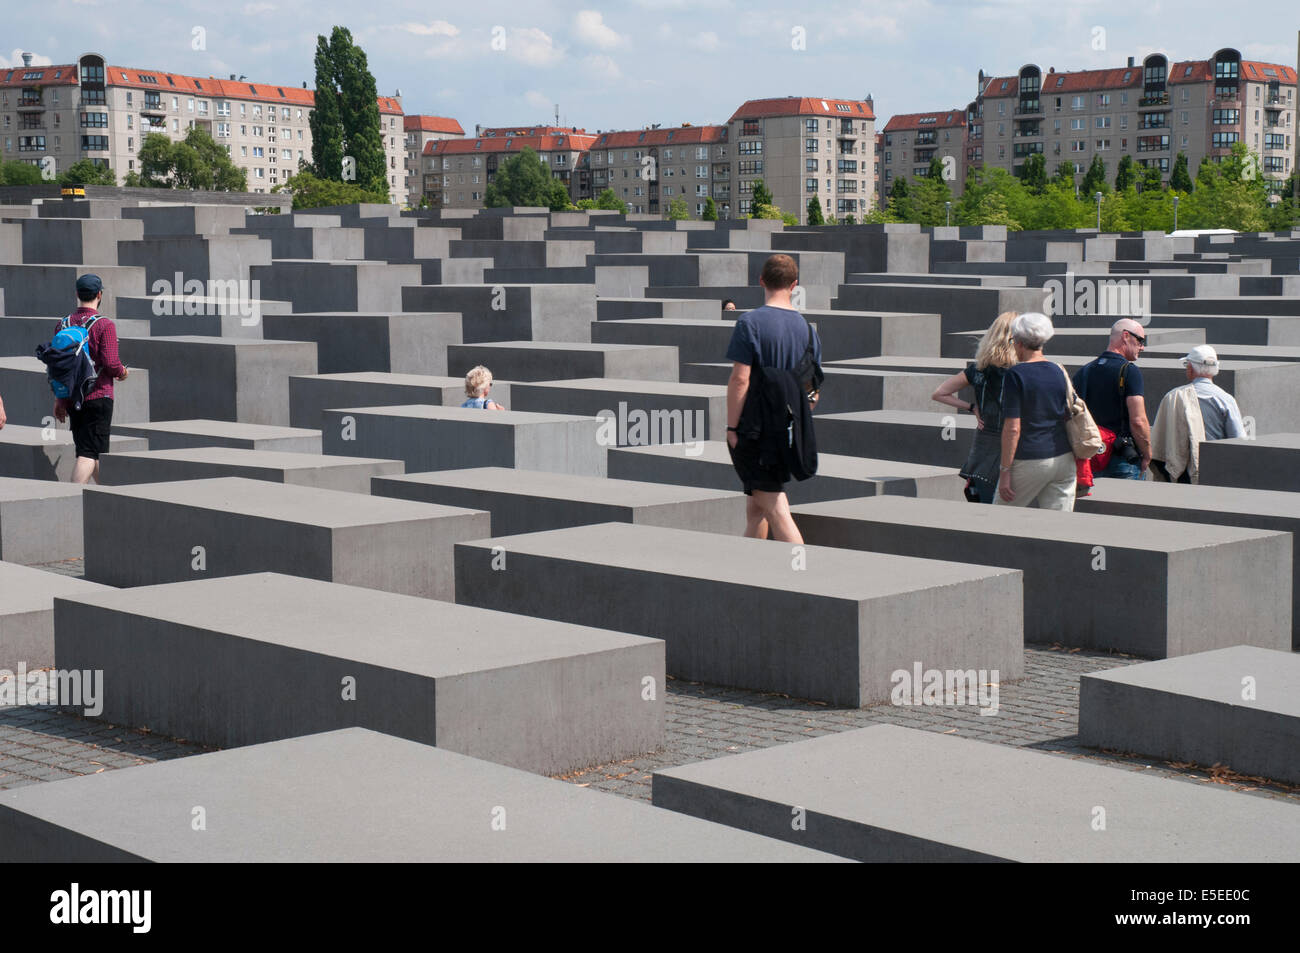 Denkmal für die ermordeten Juden Europas, Berlin Stockfoto